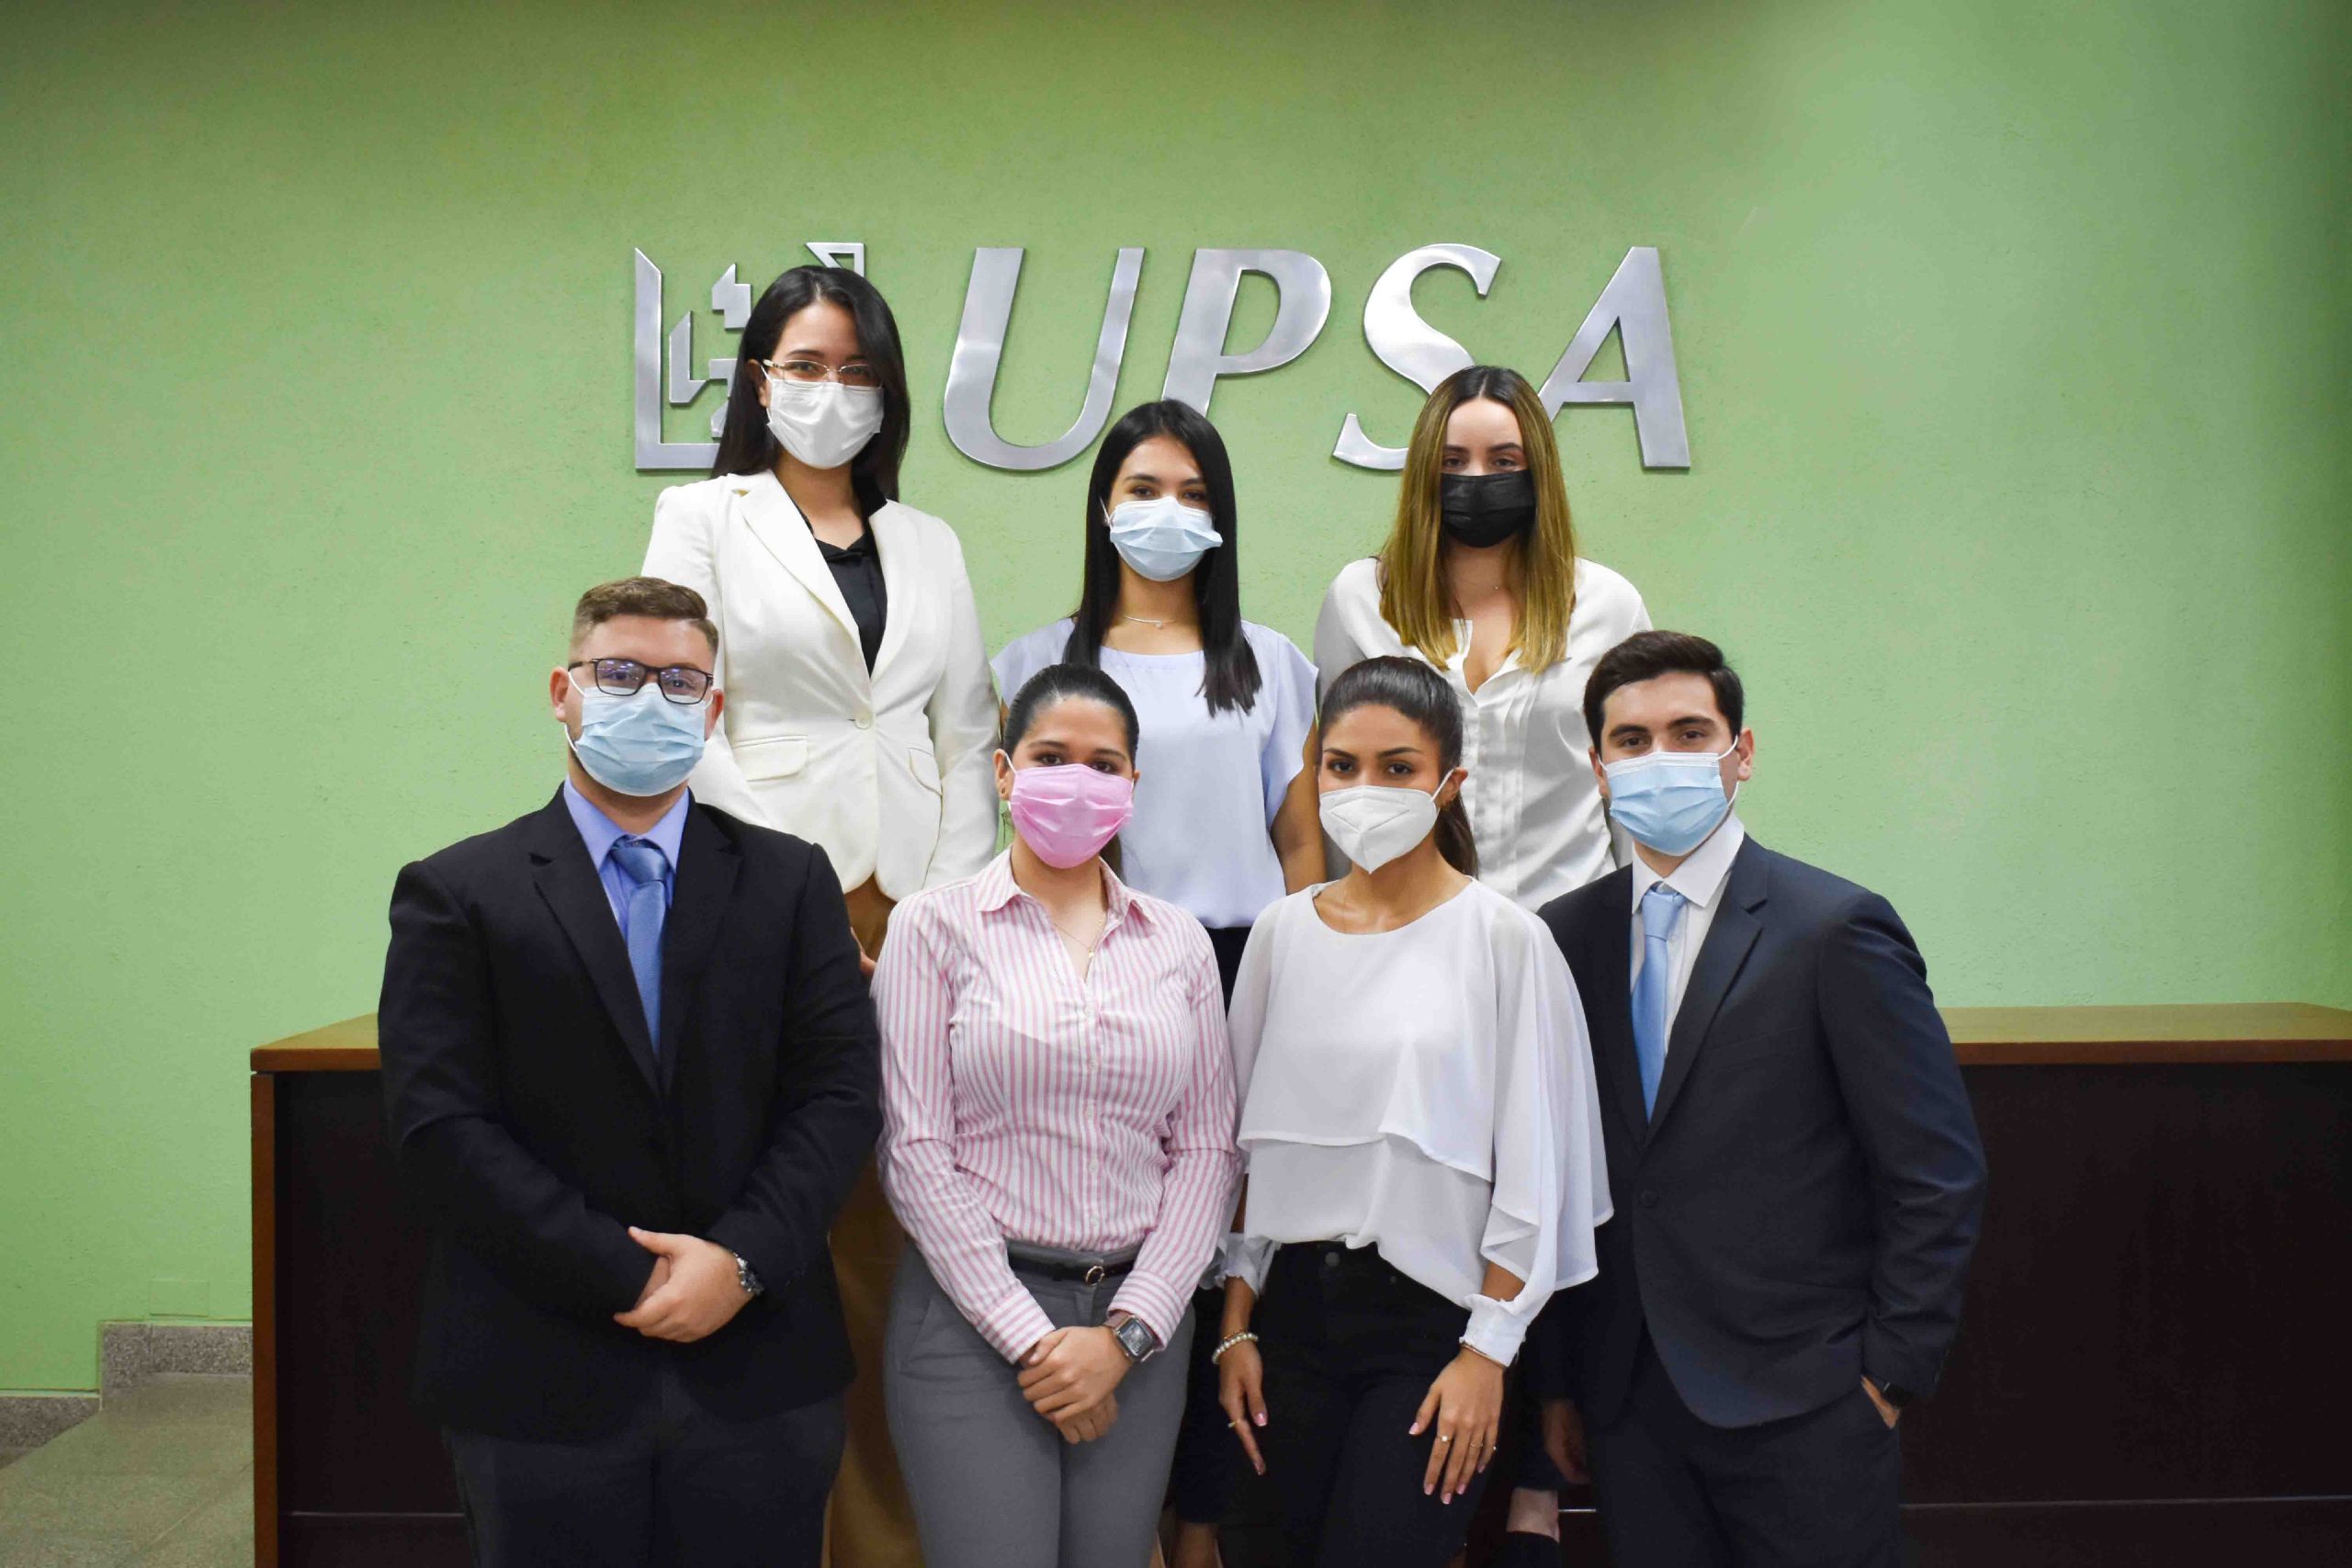 Estudiantes de Derecho de la UPSA parten  a competencia en España